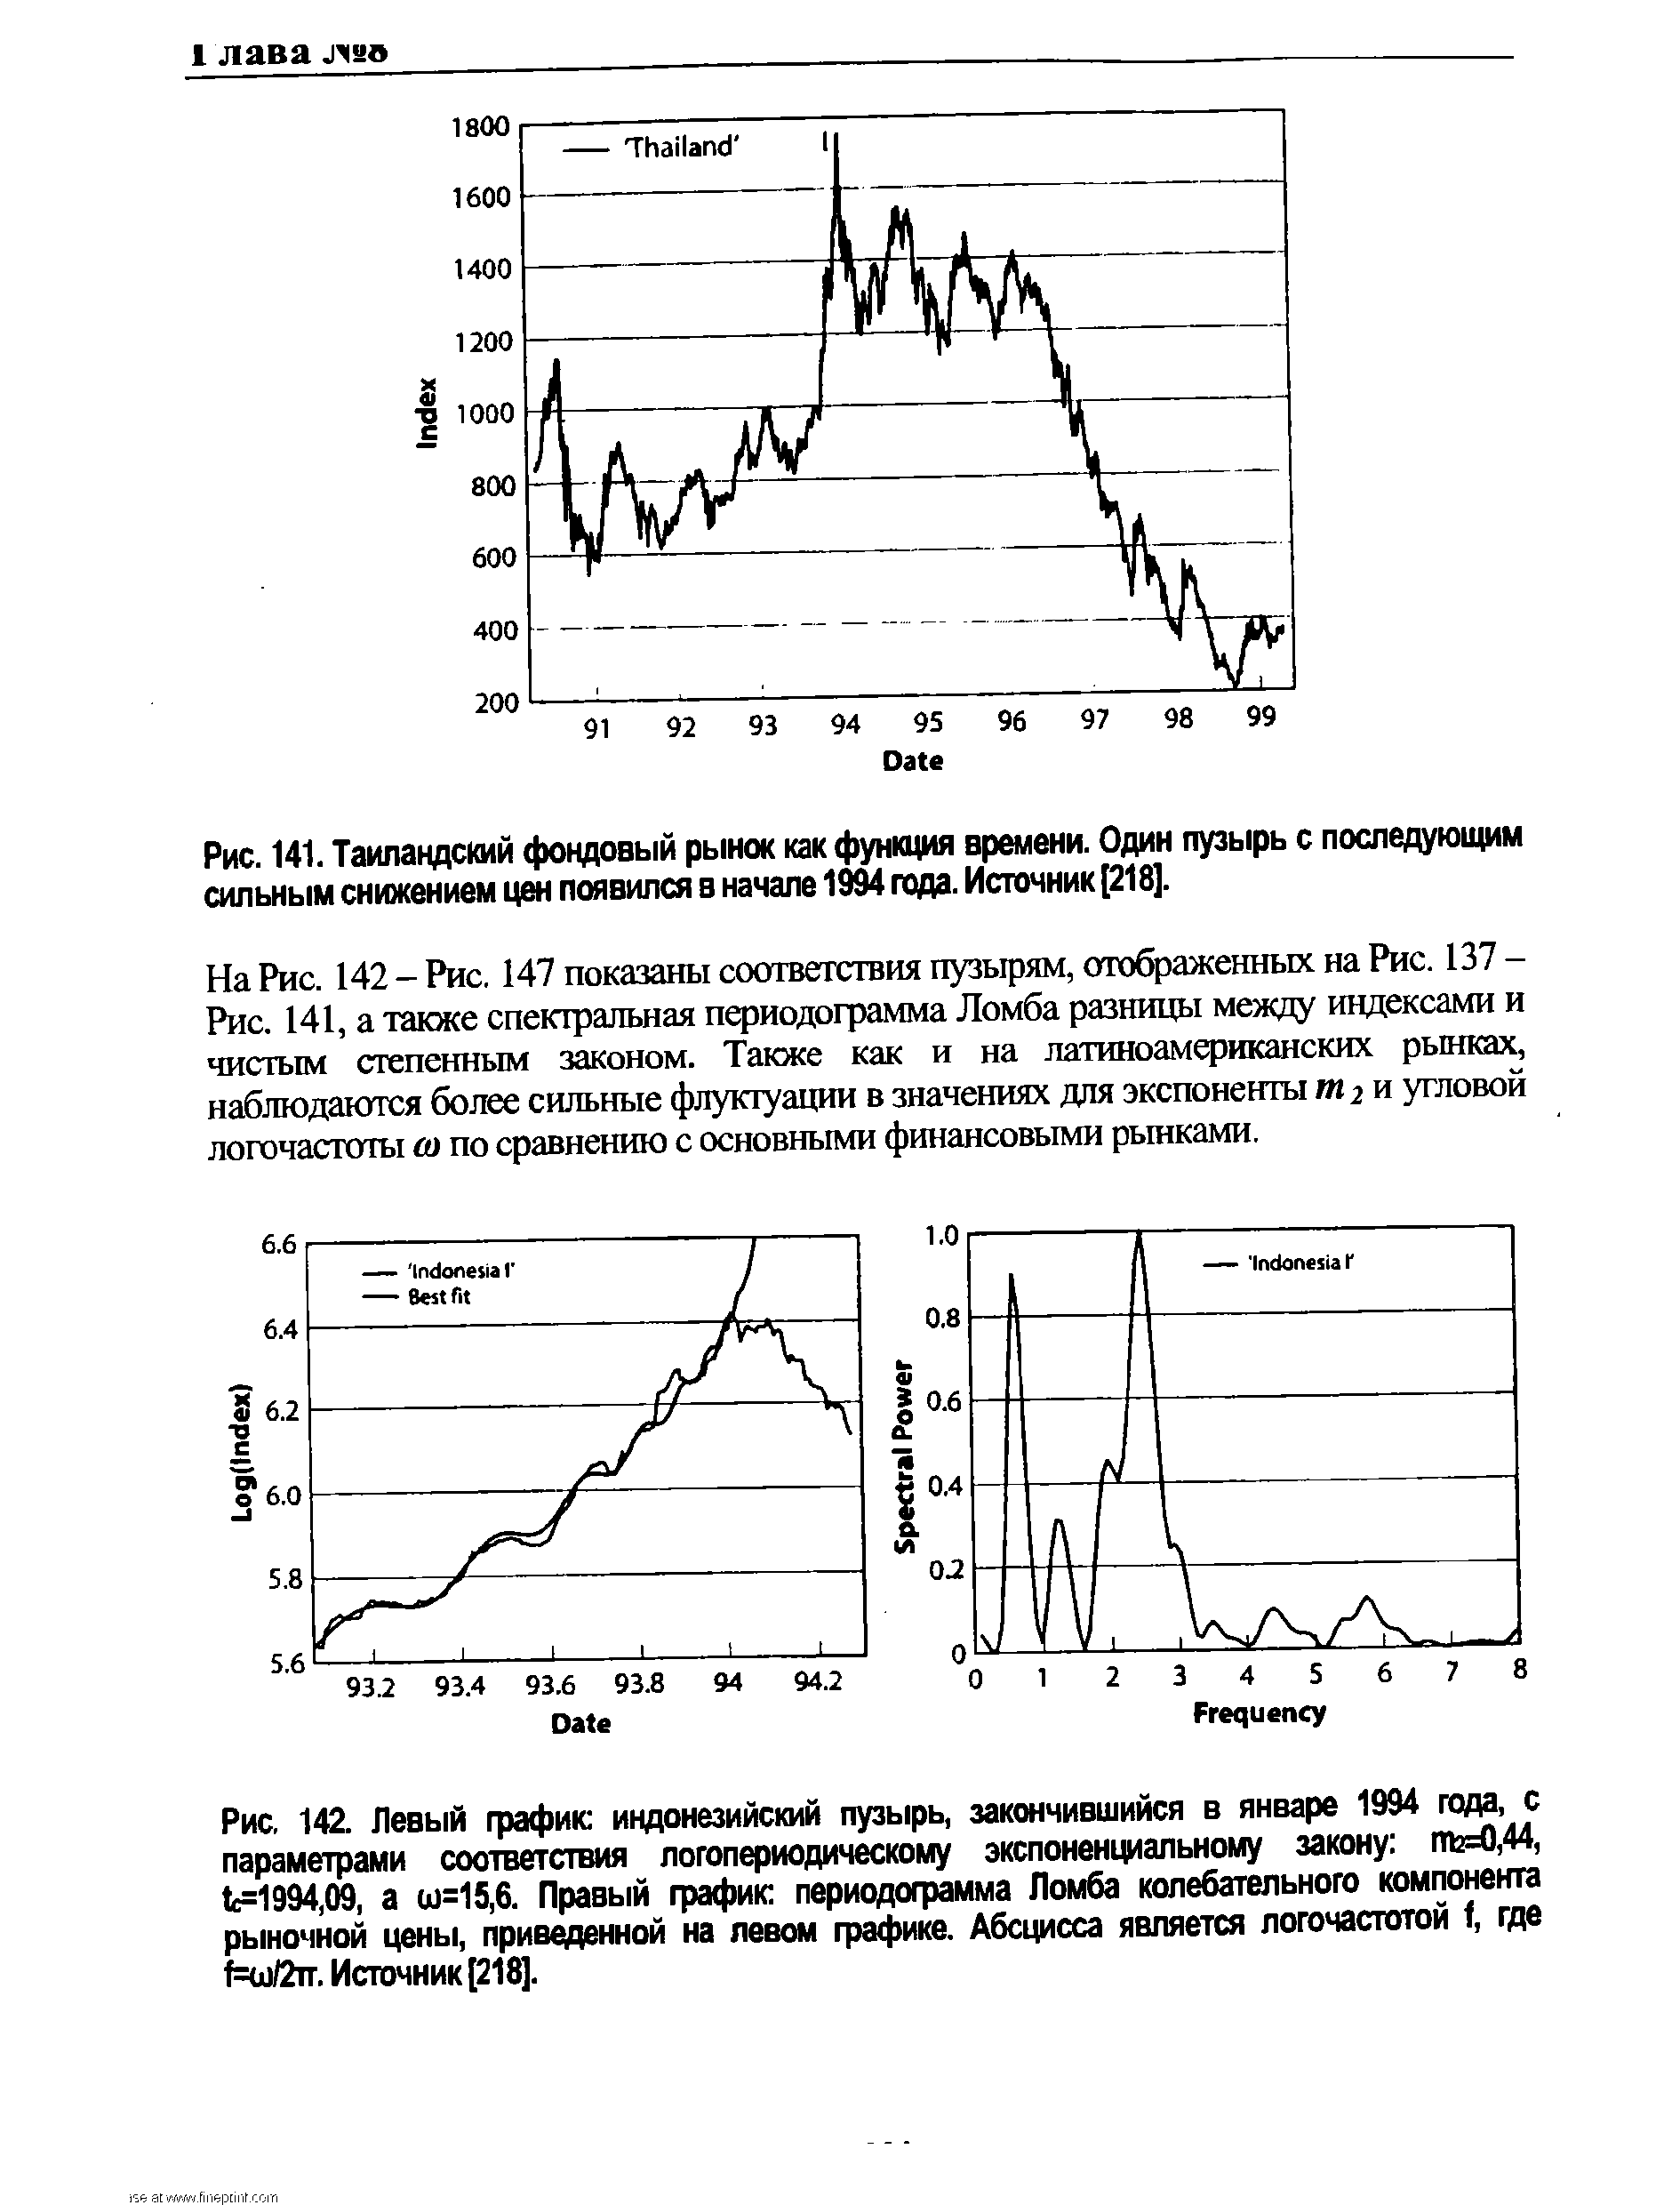 Рис. 142. Левый график индонезийский пузырь, закончившийся в январе 1994 года, с параметрами соответствия логопериодическому экспоненциальному закону пЫ),44, t =1994,09, а ш=15,6. Правый график периодограмма Ломба колебательного компонента <a href="/info/5890">рыночной цены</a>, приведенной на левом графике. Абсцисса является логочастотой f, где т=ш/2тт. Источник [218].
